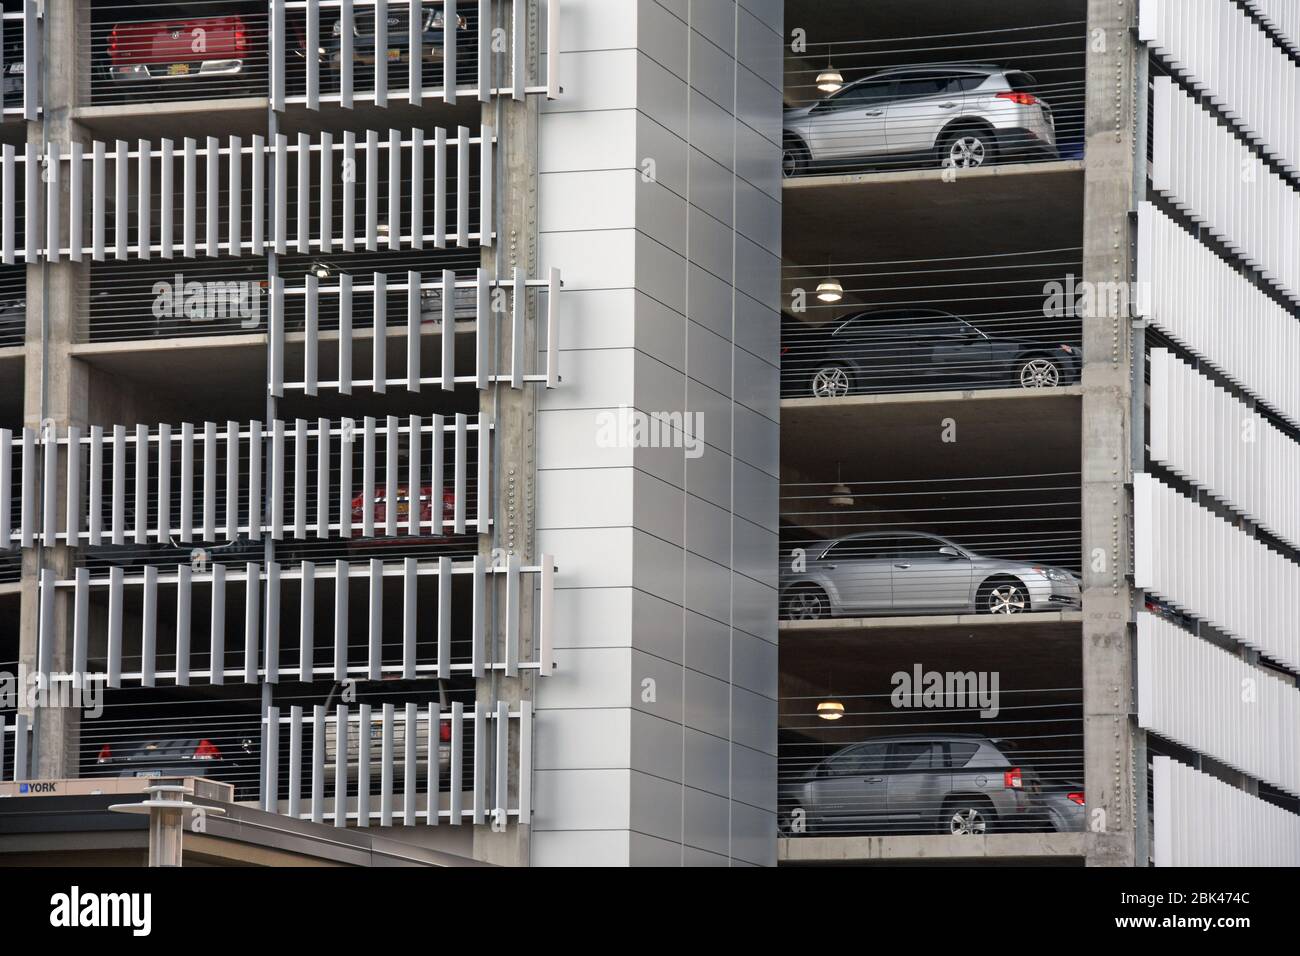 Car parking building, USA Stock Photo